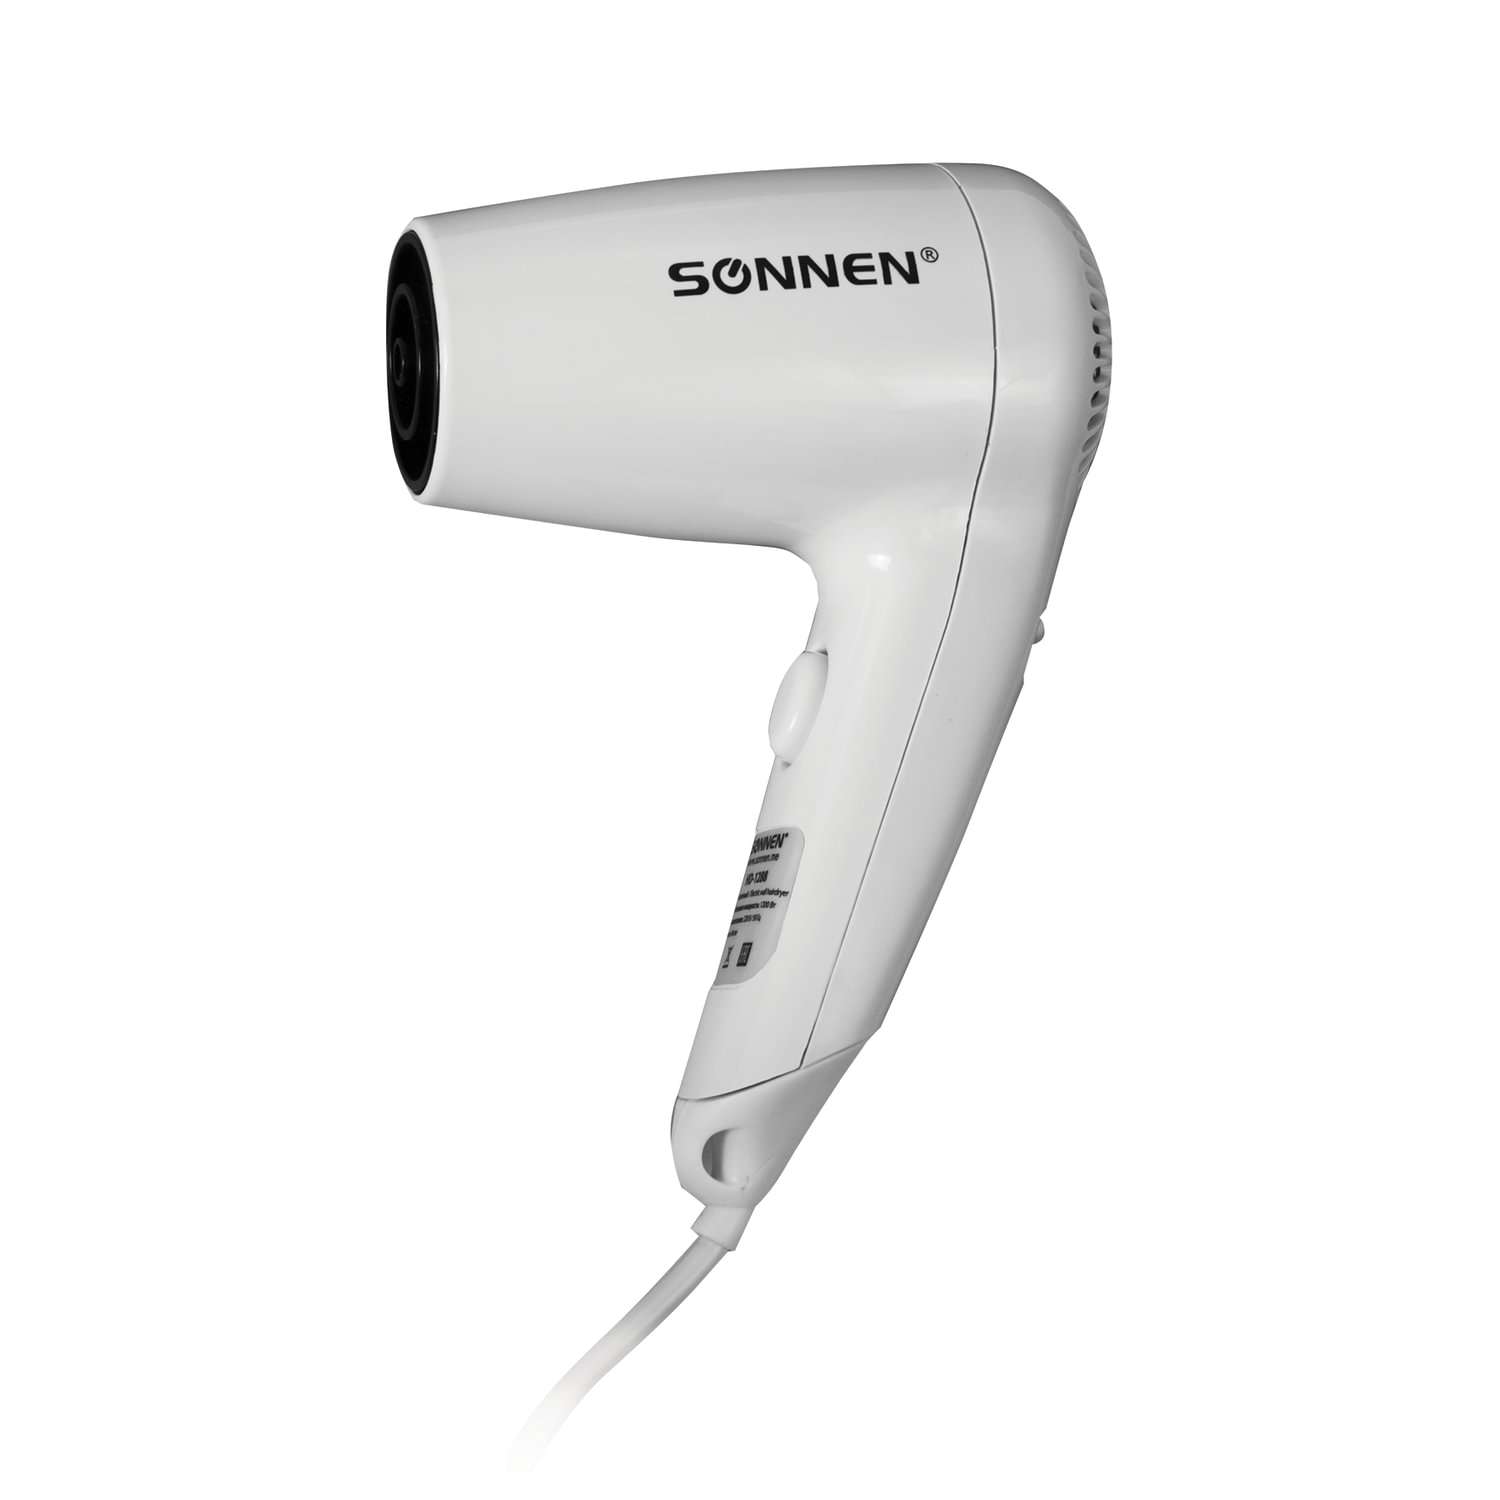 Фен Sonnen настенный для сушки и укладки волос 1200 Вт 2 скорости - фото 10